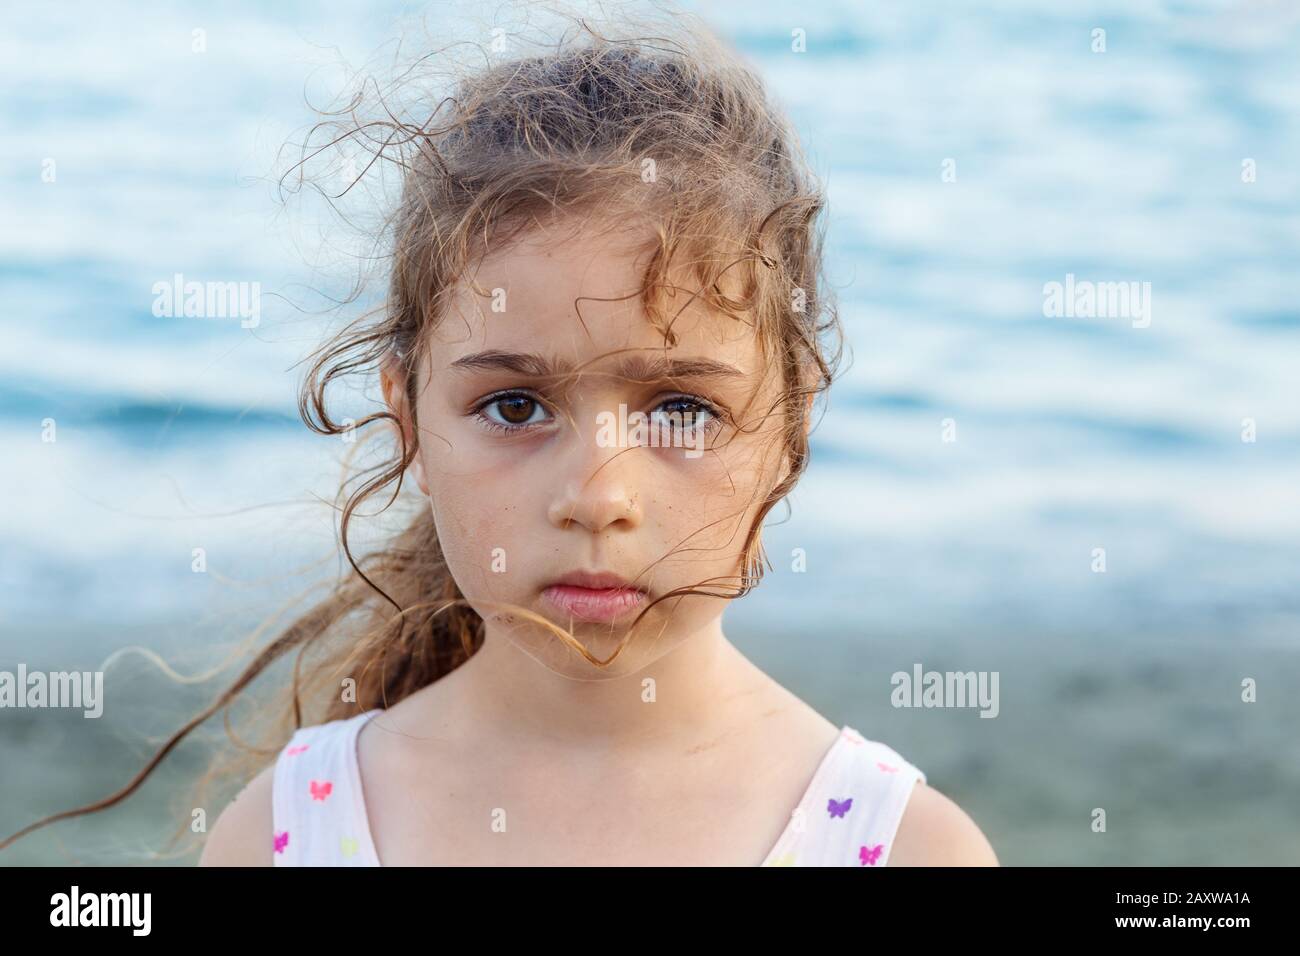 Portrait des süßen traurigen kleinen Mädchens, das am Meer steht Stockfoto